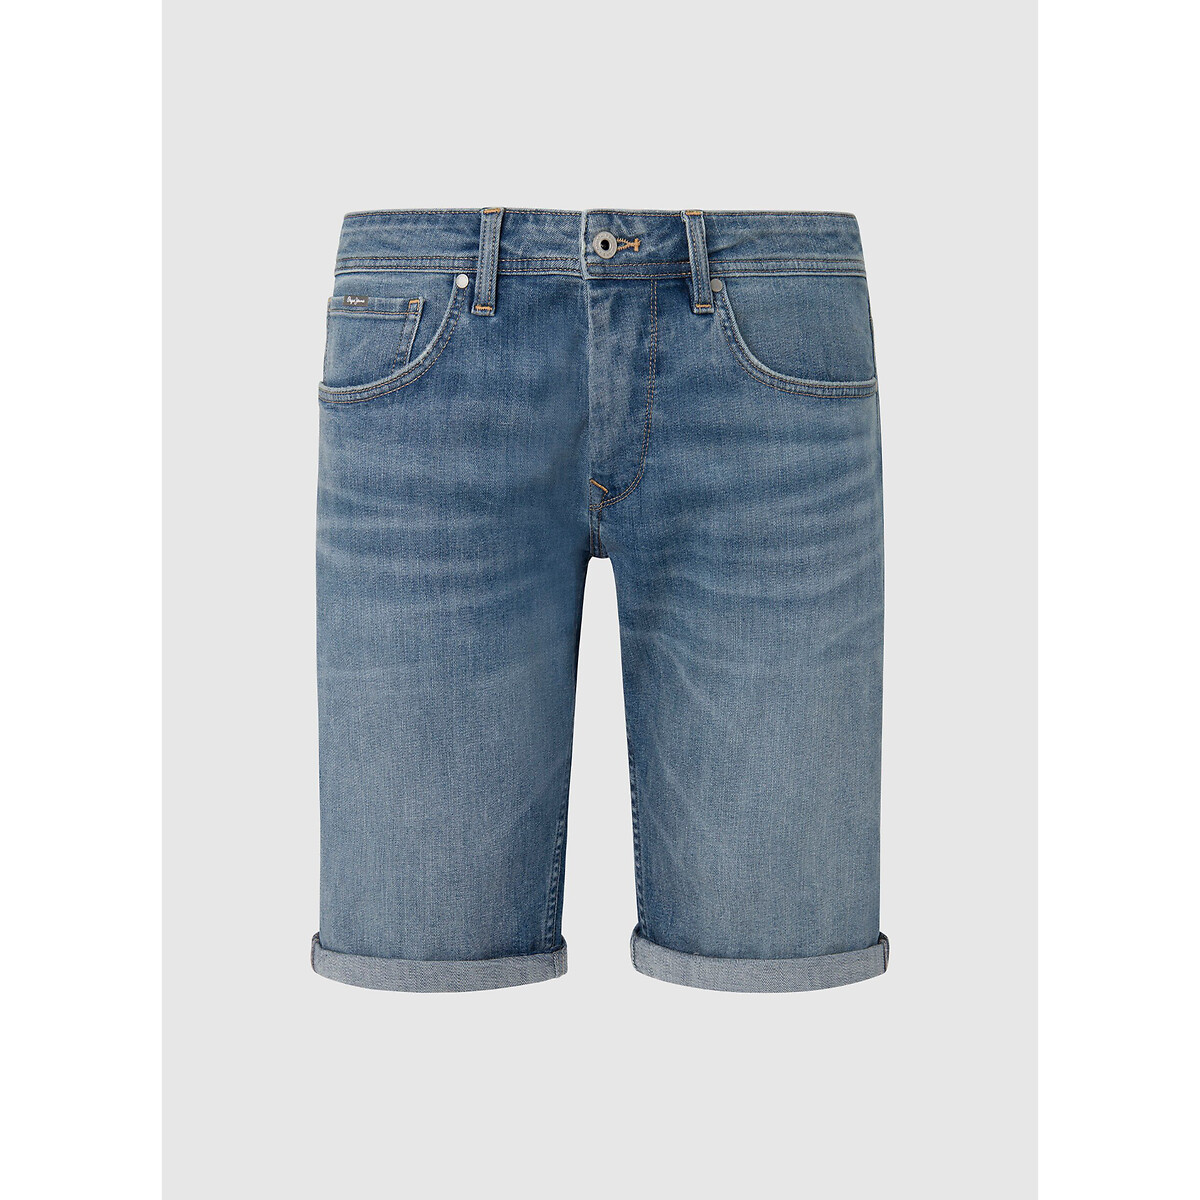 Шорты из джинсовой ткани прямого покроя 28 (US) синий жакет из джинсовой ткани прямого покроя xs серый